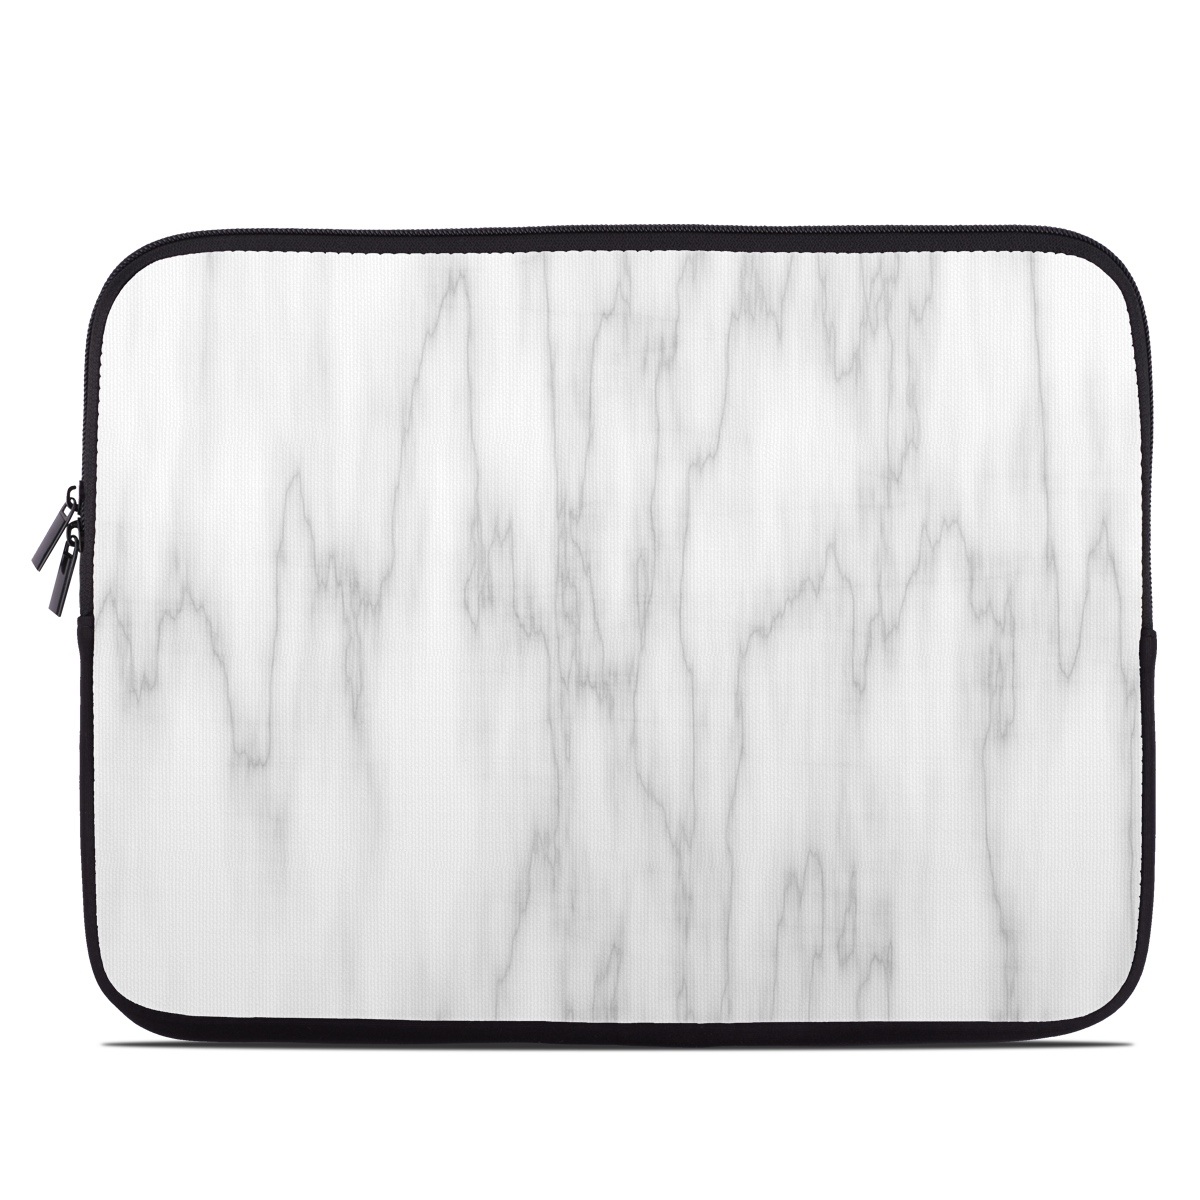 Laptop Sleeve - Bianco Marble (Image 1)